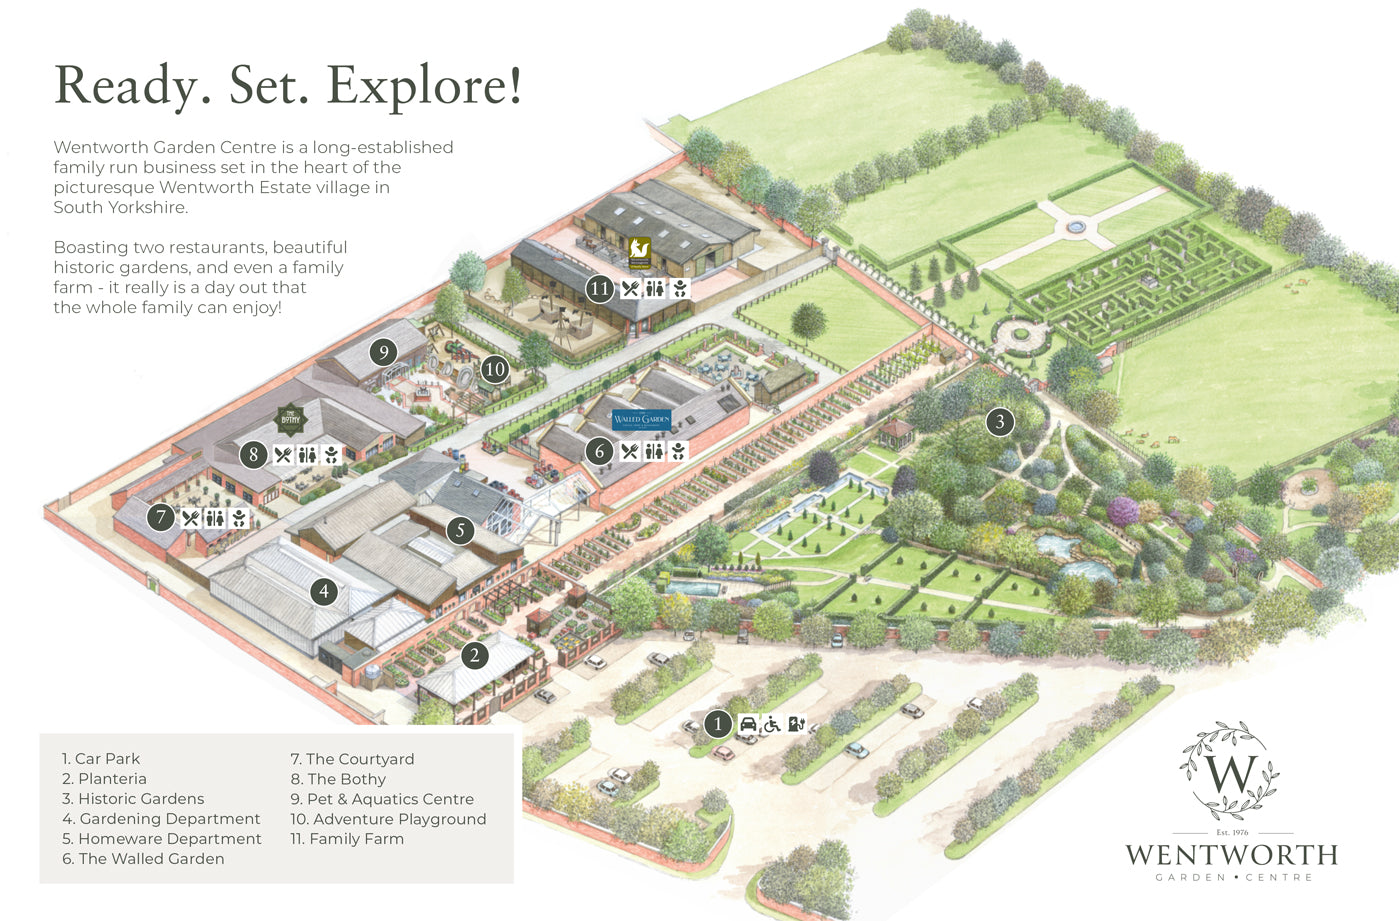 Wentworth Garden Centre site map